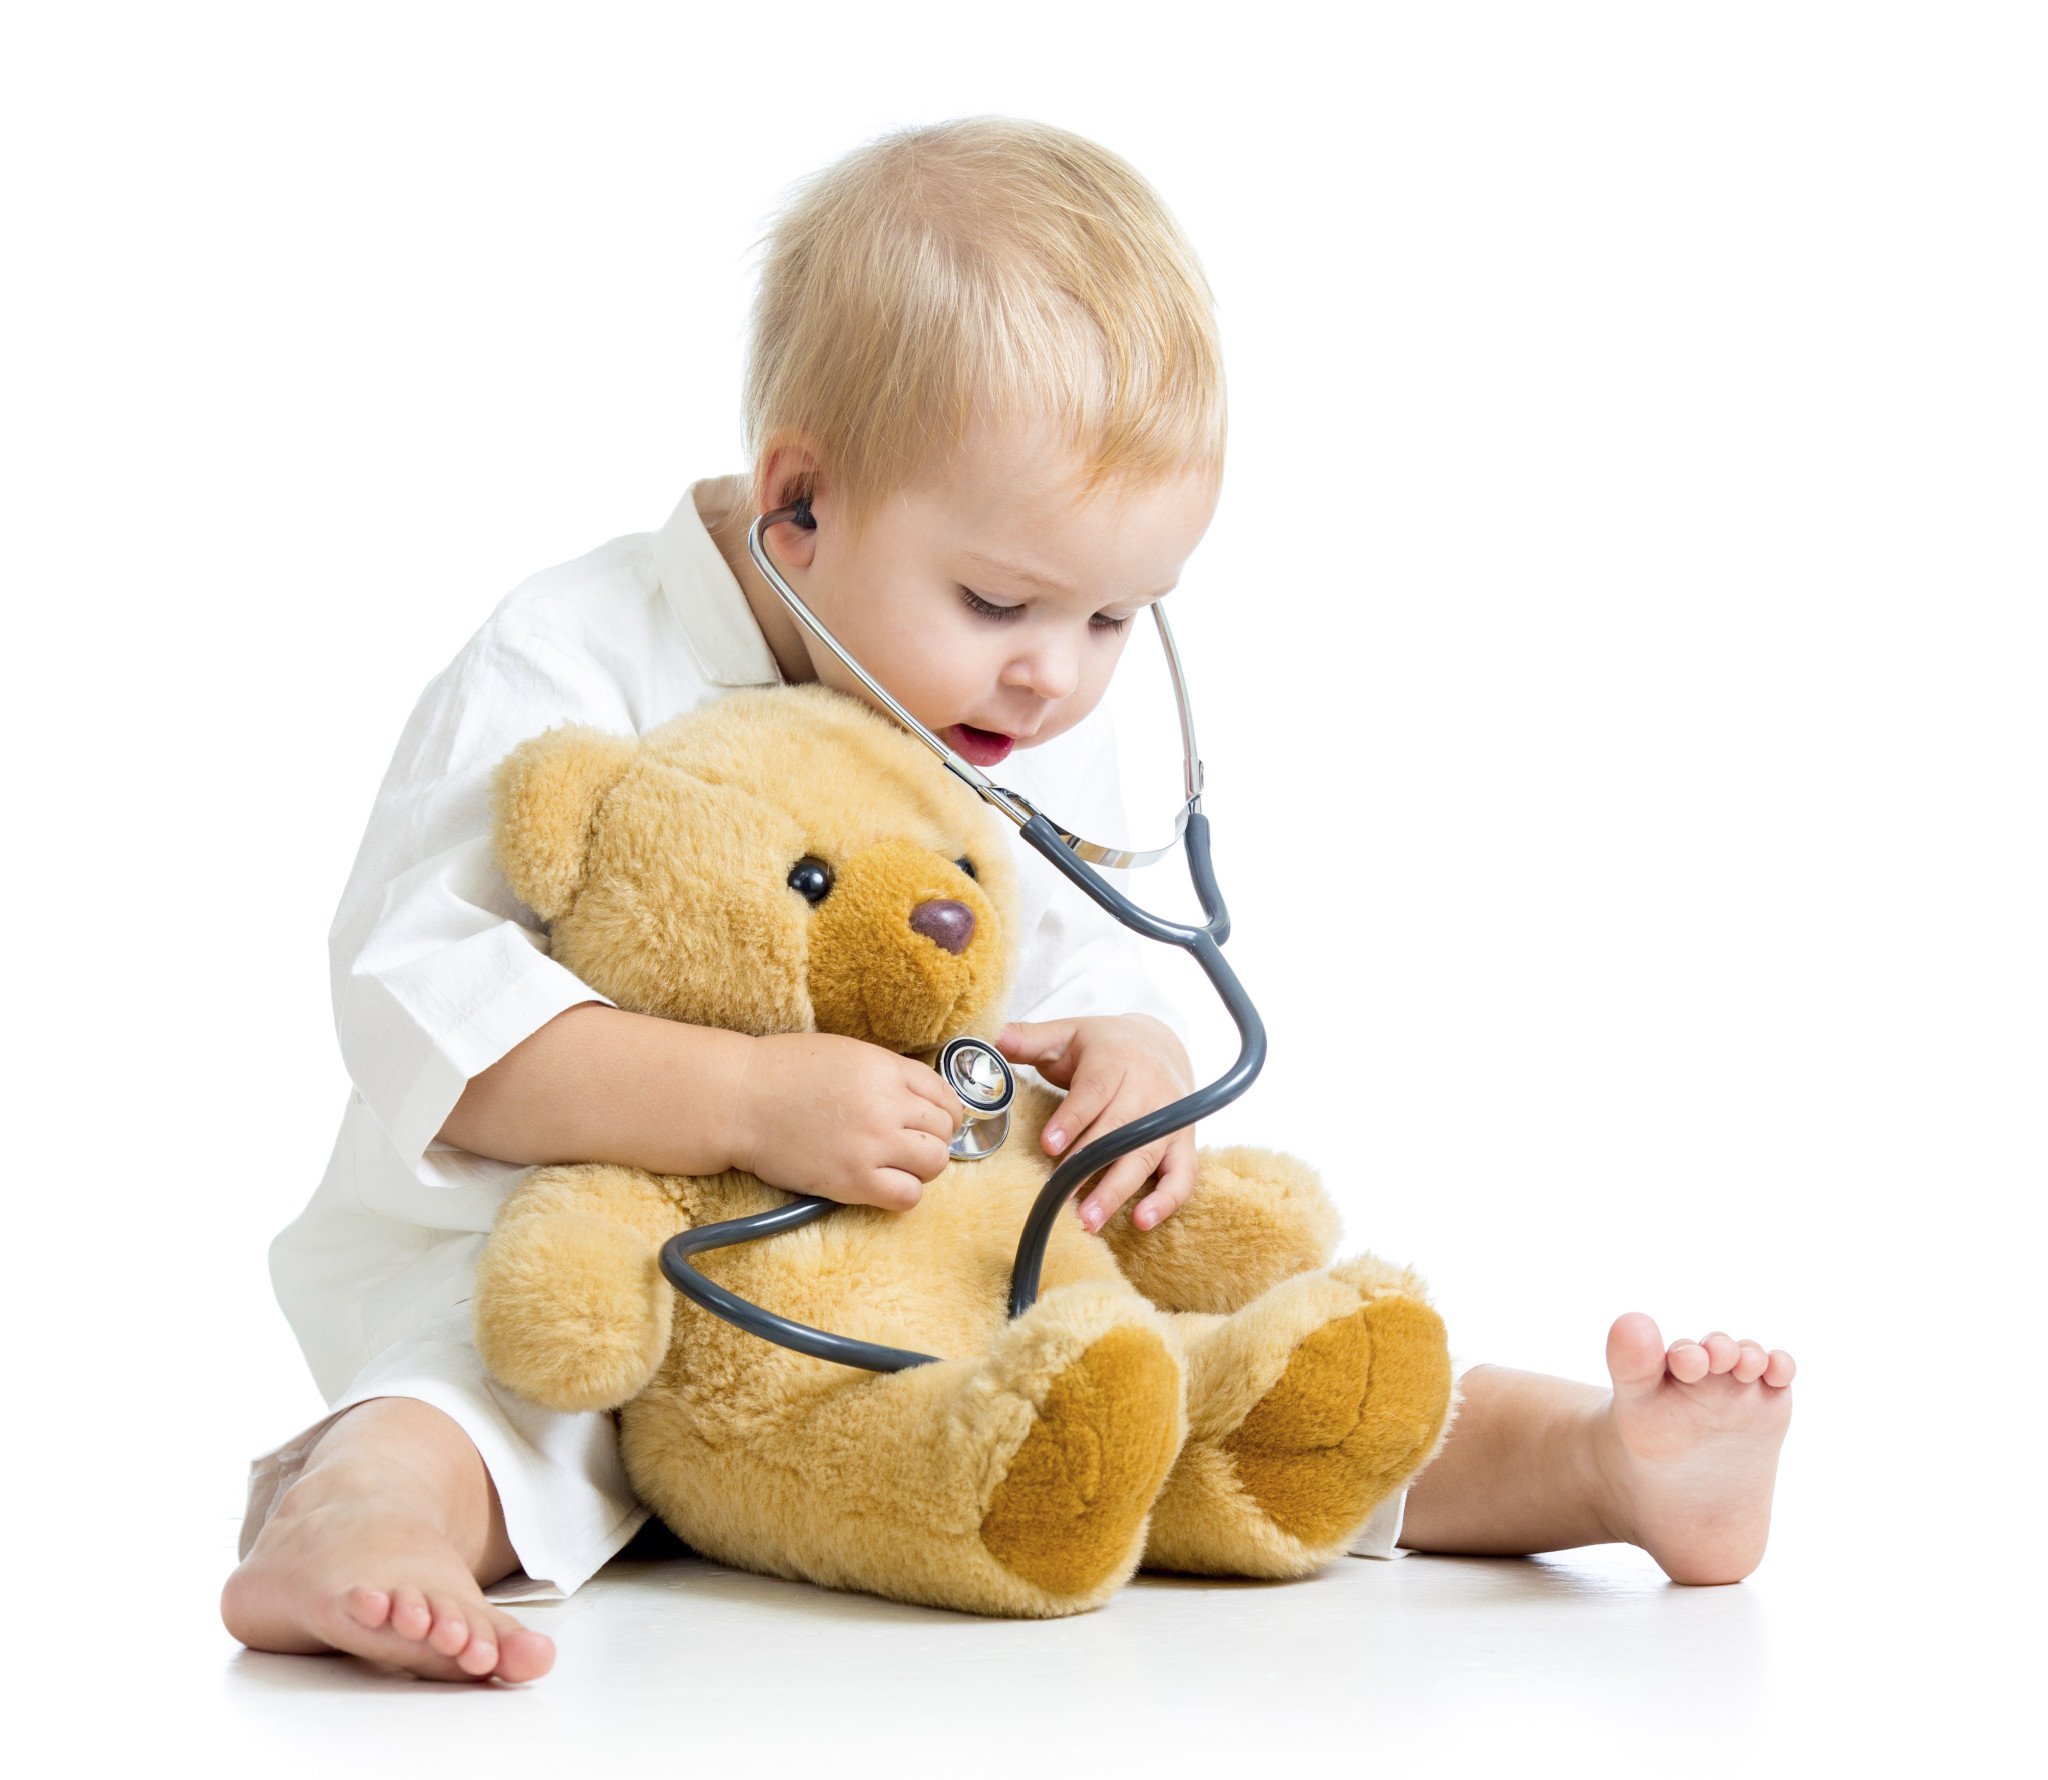 Лікування неврозу у дітей: причини, симптоми і профілактика